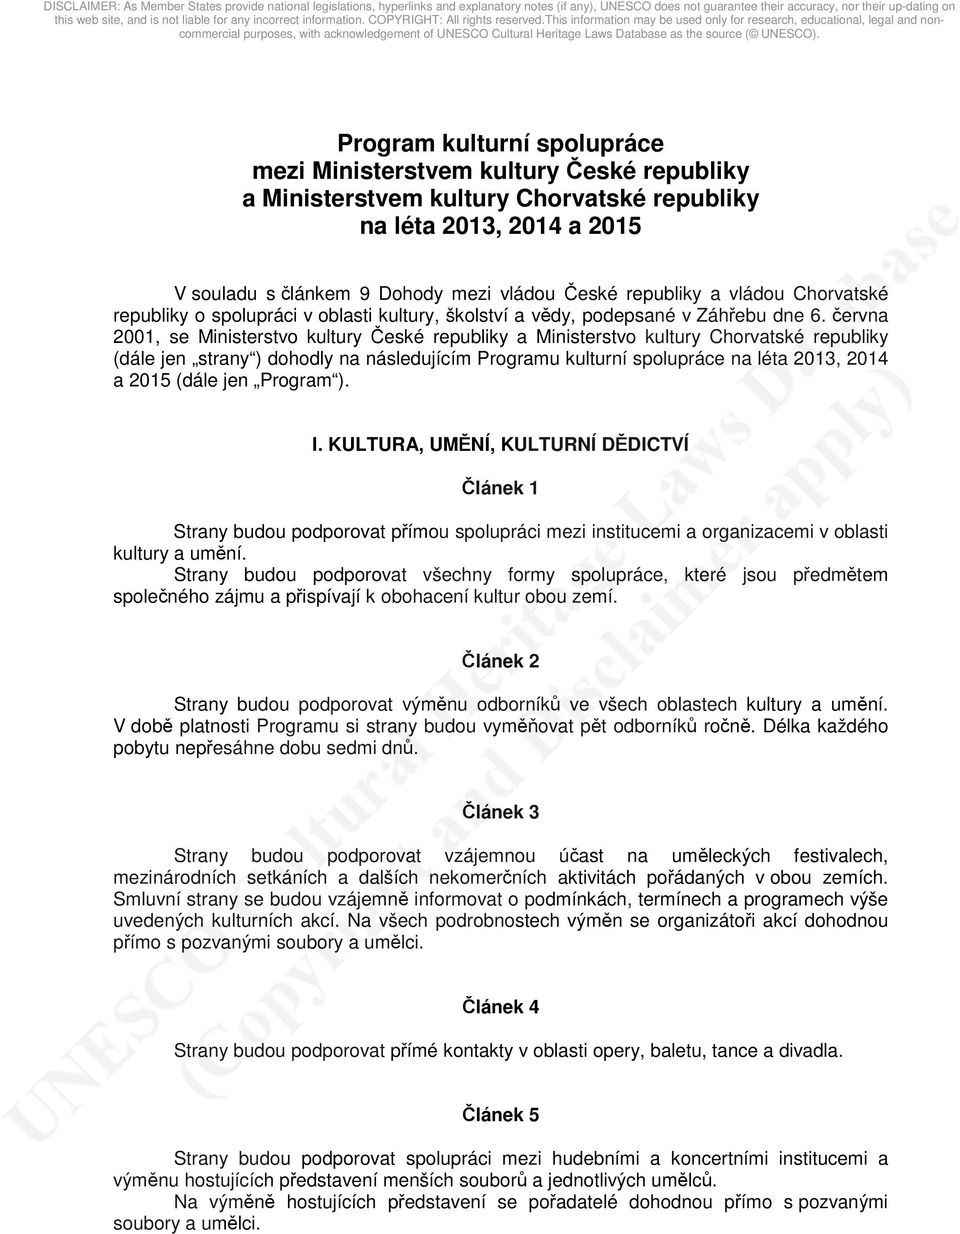 června 2001, se Ministerstvo kultury České republiky a Ministerstvo kultury Chorvatské republiky (dále jen strany ) dohodly na následujícím Programu kulturní spolupráce na léta 2013, 2014 a 2015